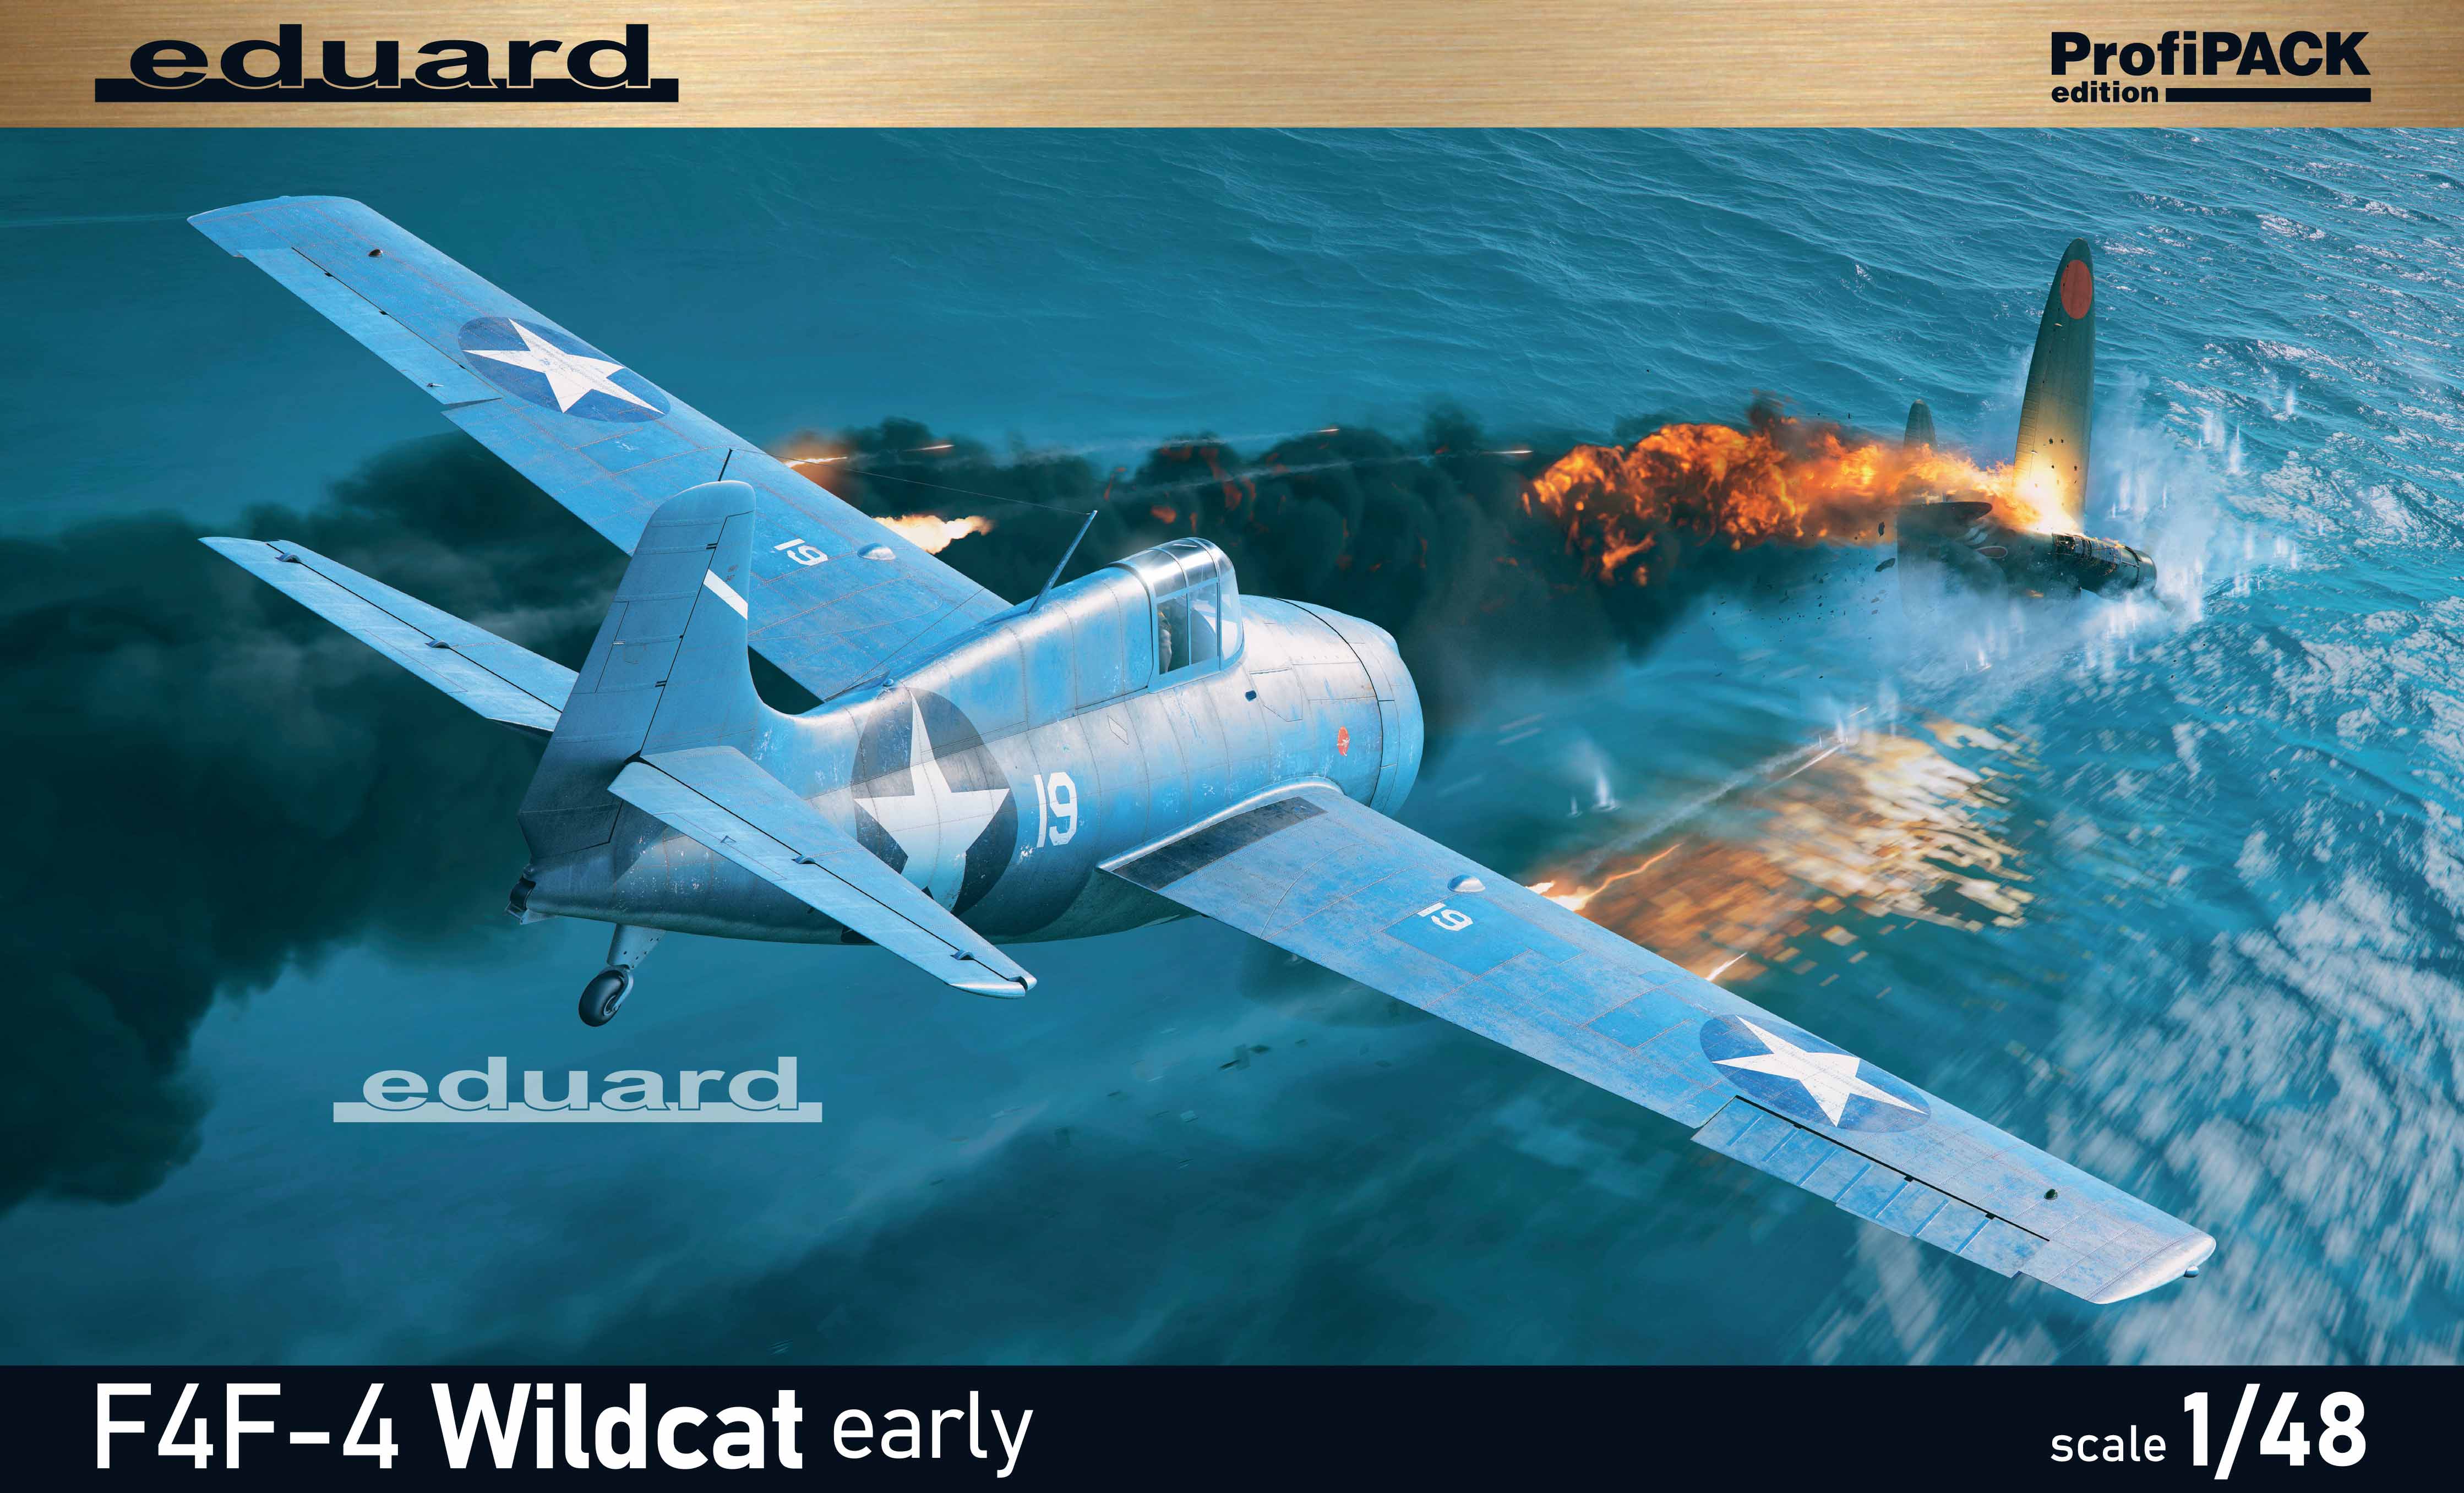 Model kit 1/48Grumman F4F-4 Wildcat early ProfiPACK edition(Eduard kits)